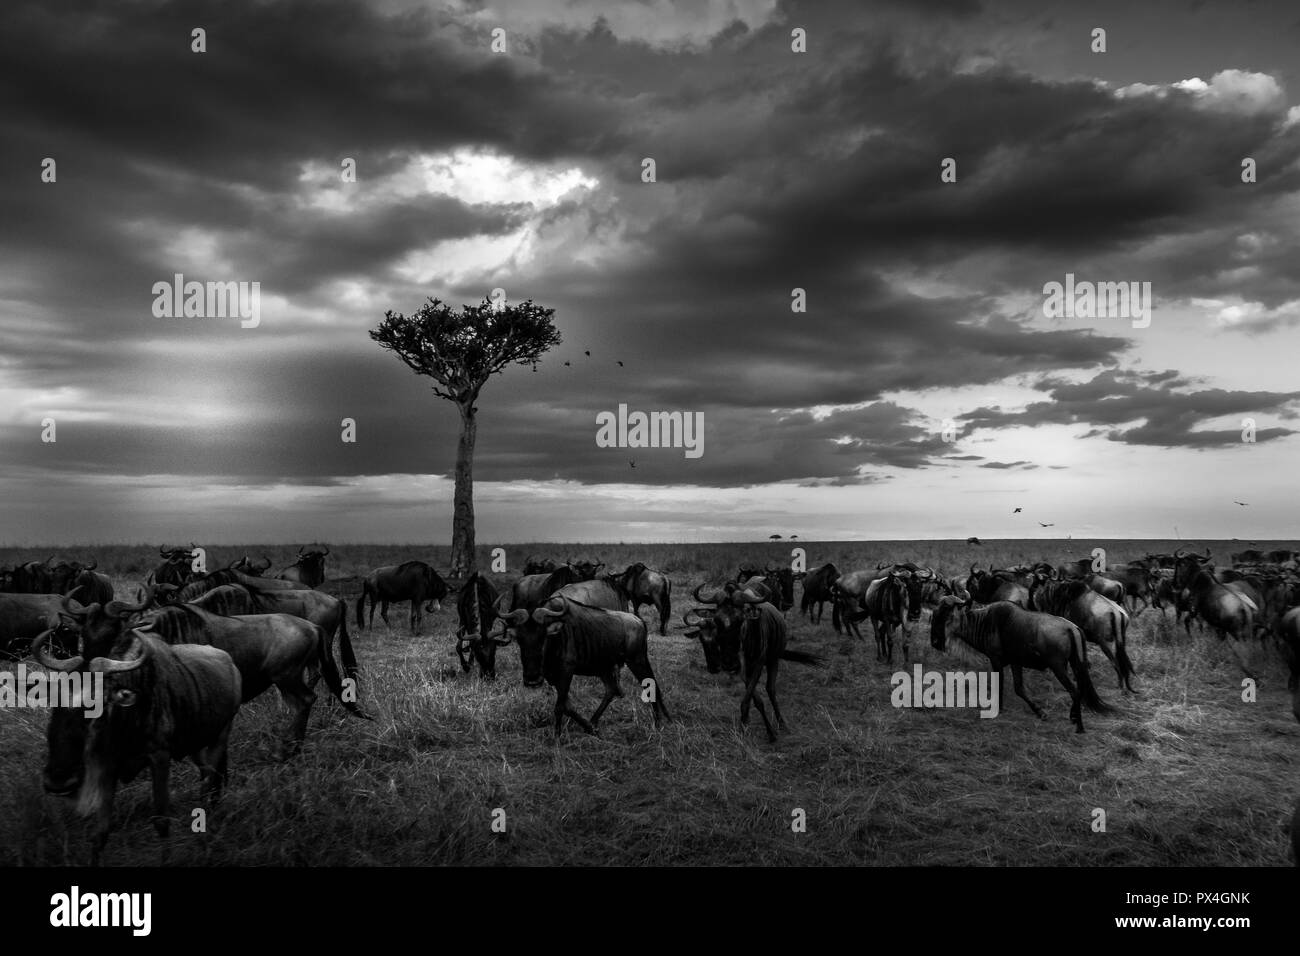 This image of Wildebeest is taken at Masai Mara in Kenya. Stock Photo